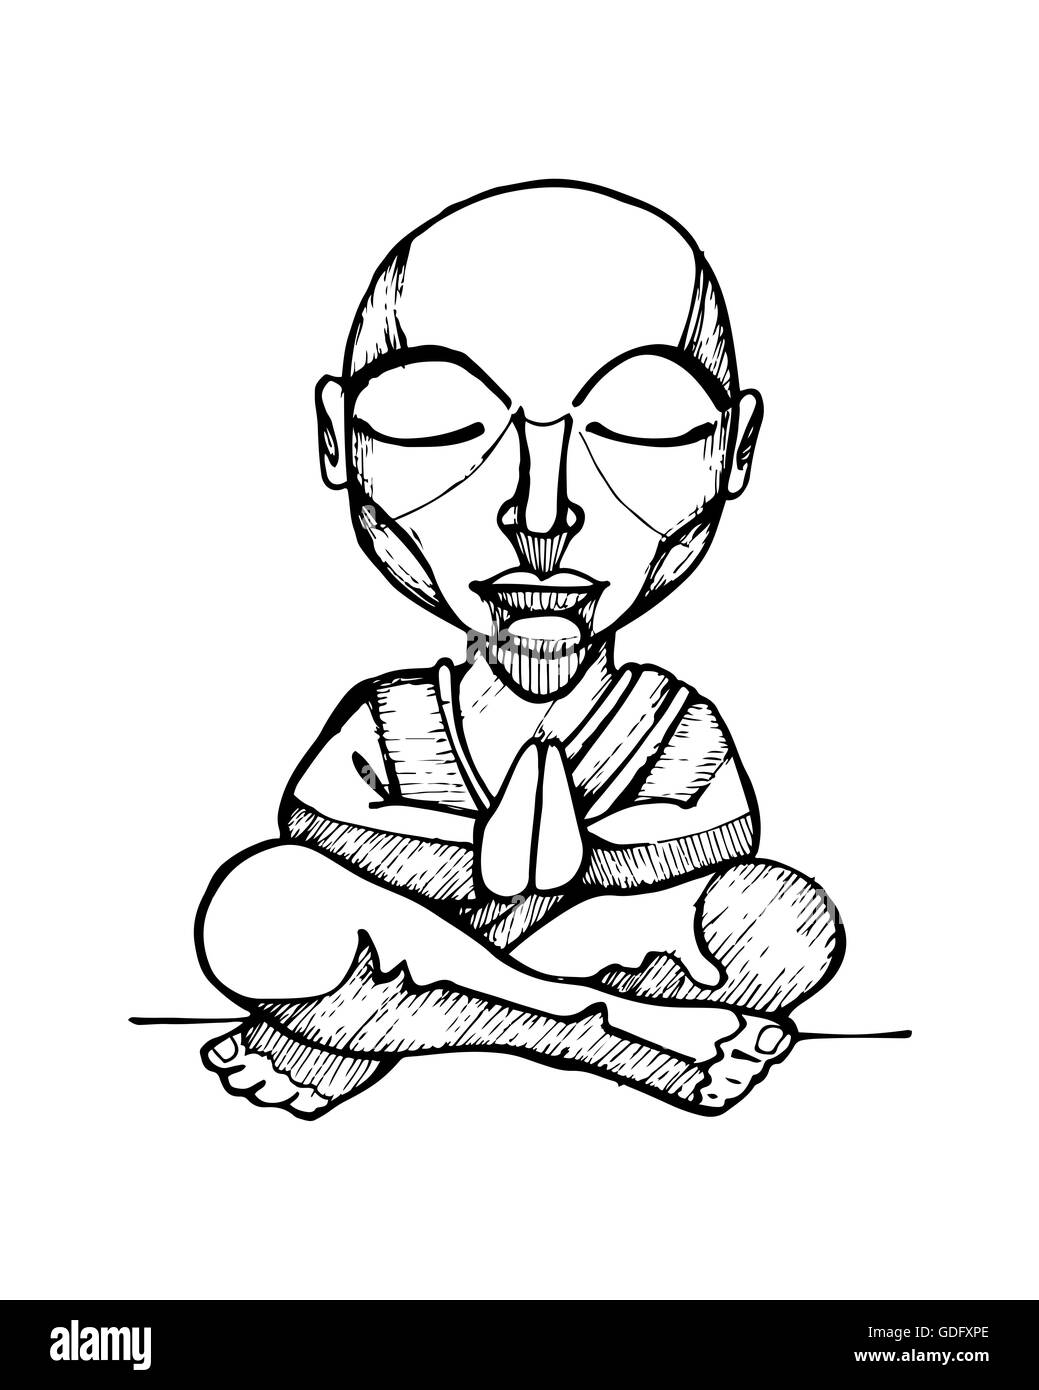 L'illustration ou le dessin à la main d'un moine bouddhiste de dessin animé Banque D'Images